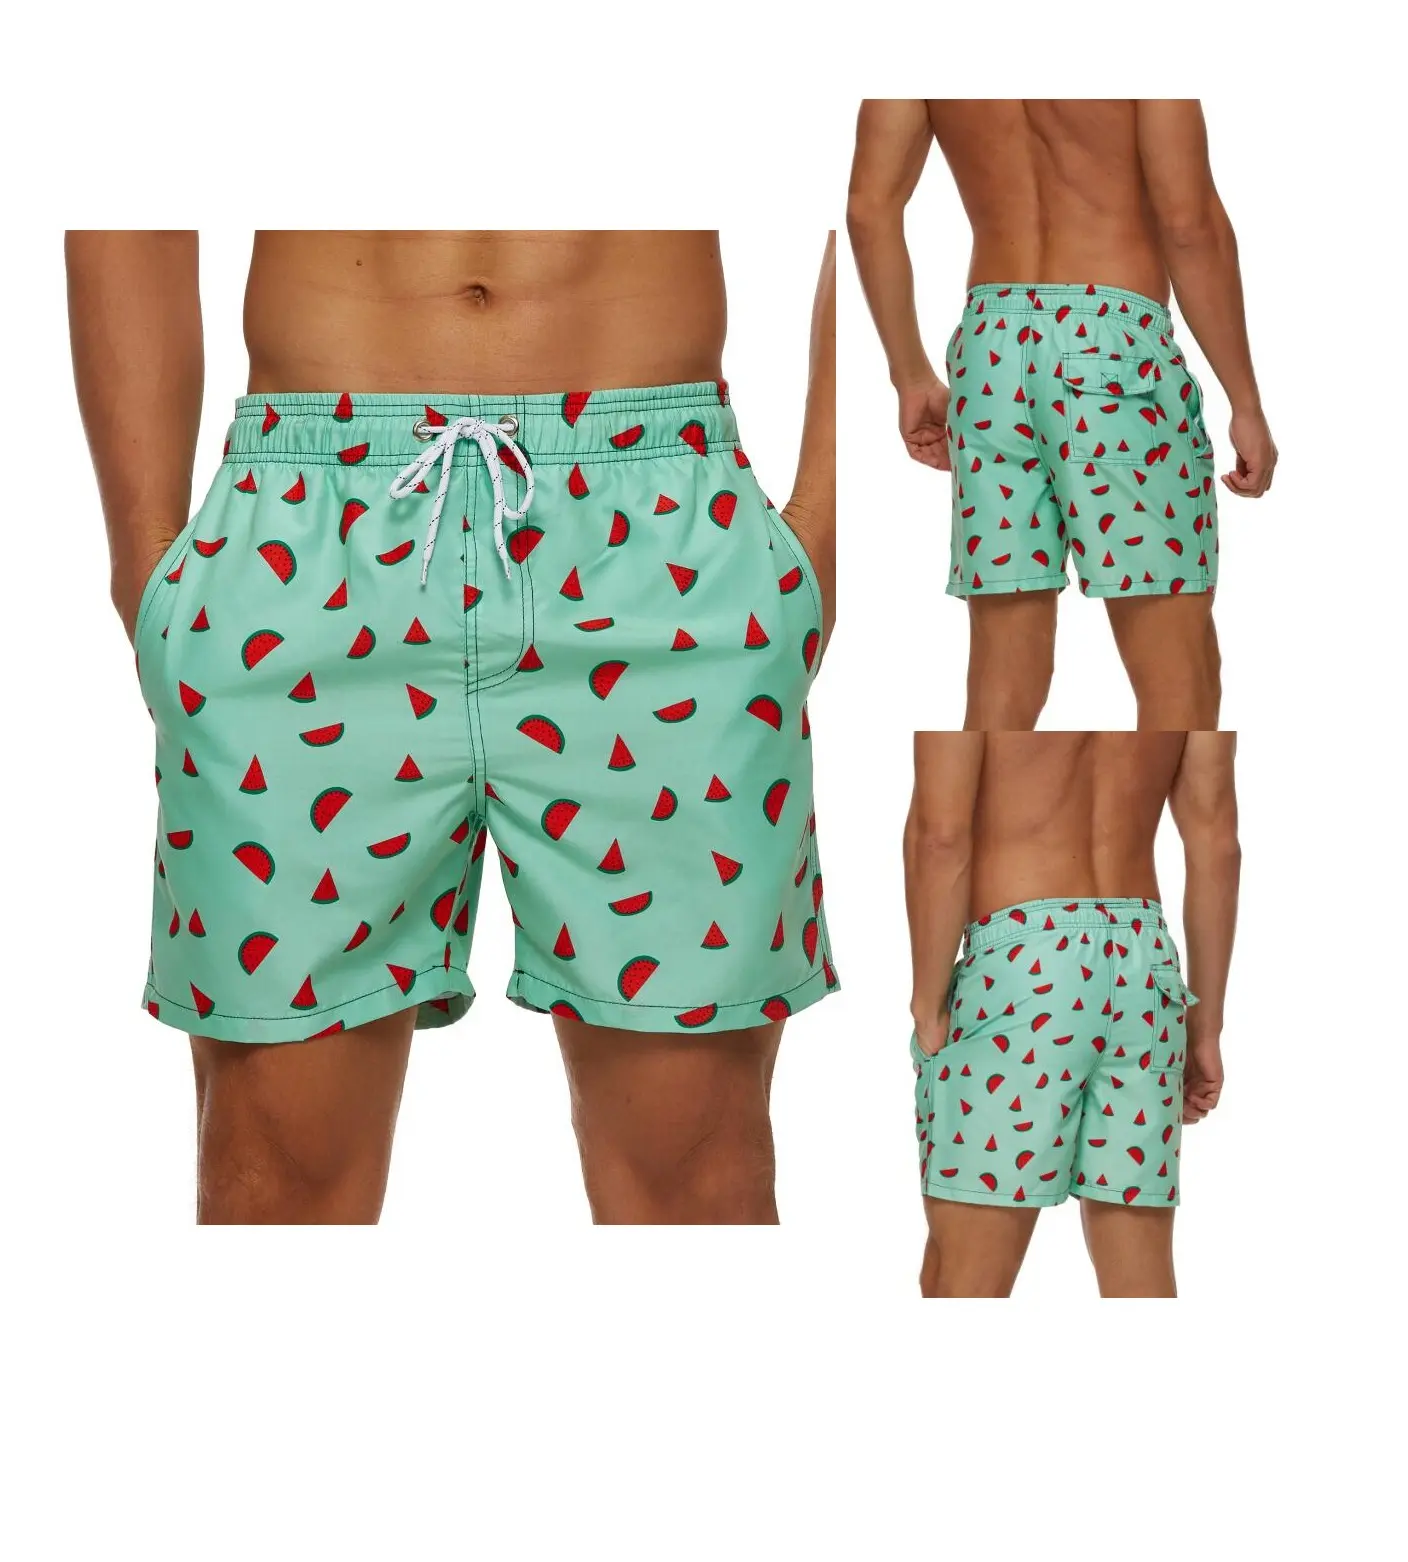 Pantalones cortos estampados por sublimación para hombre, de secado rápido bañadores de tela de poliéster, directo de la fábrica de Amazon